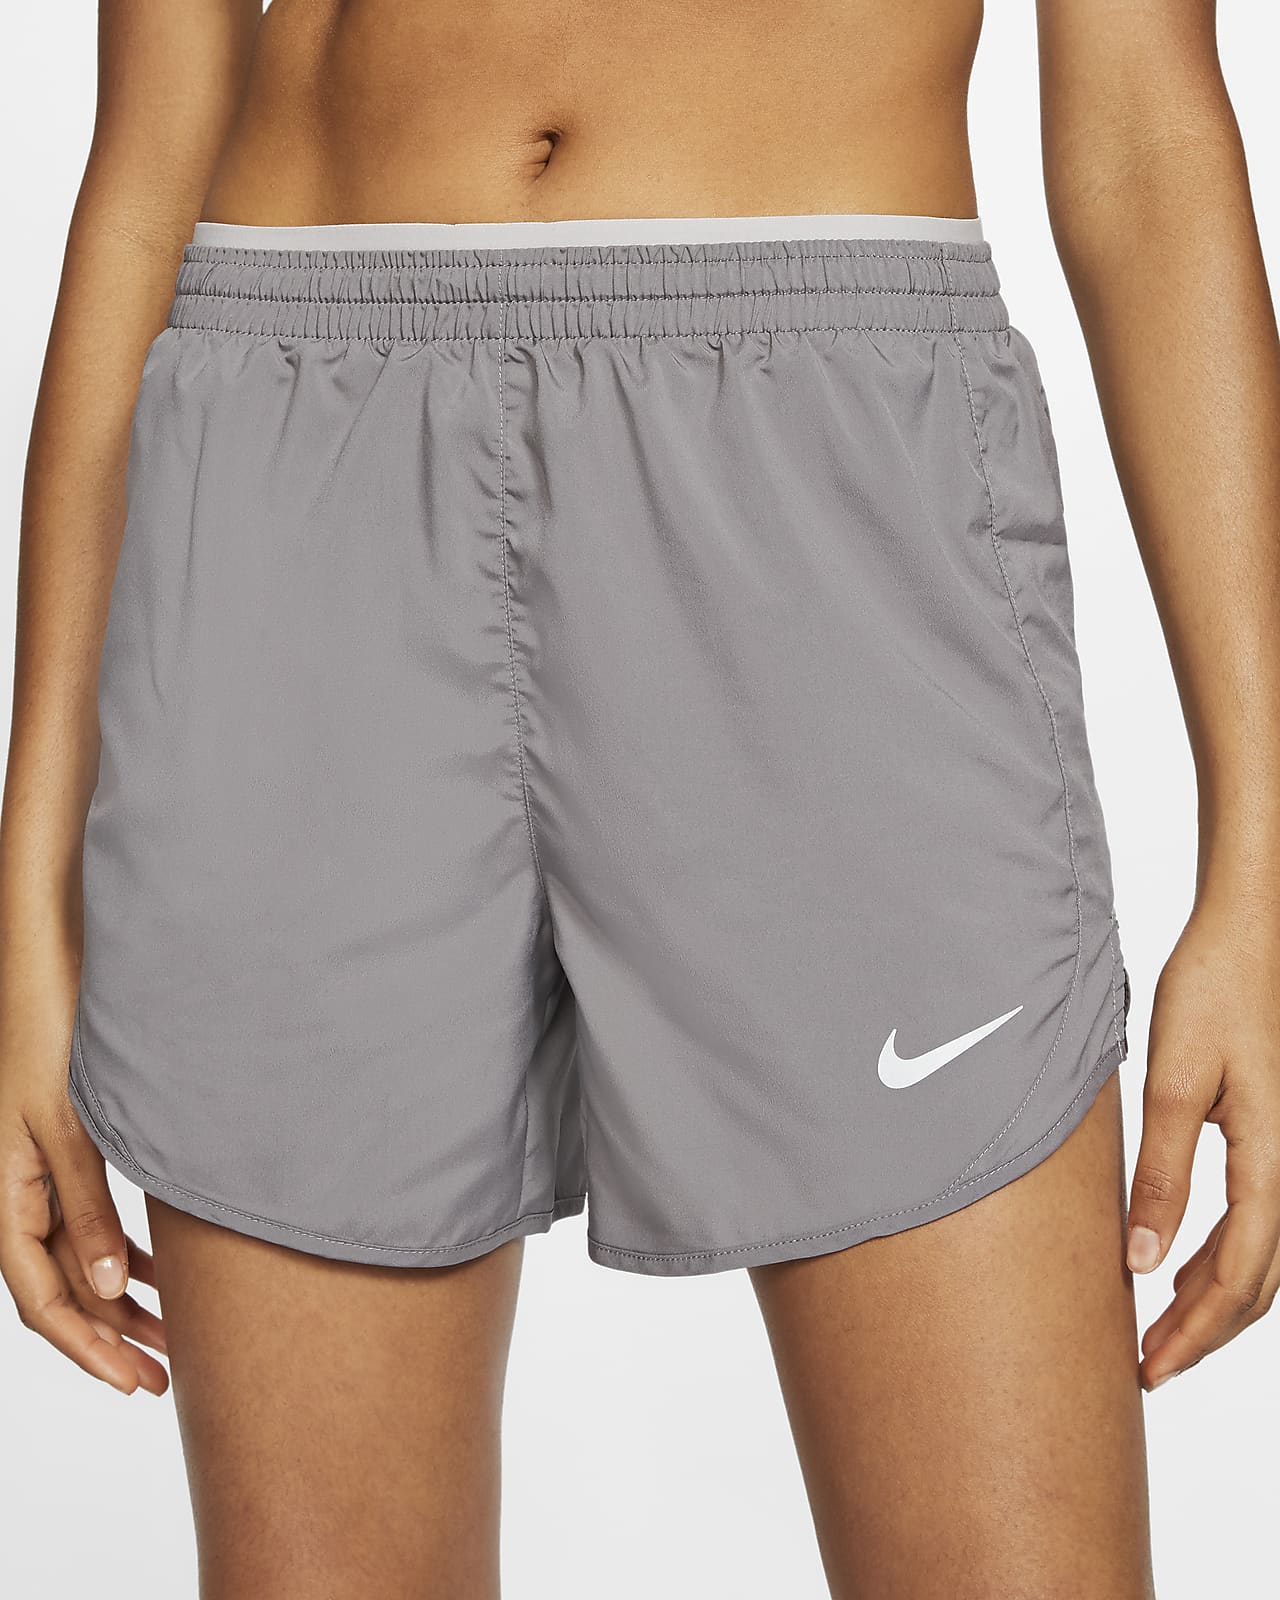 gray nike shorts women's